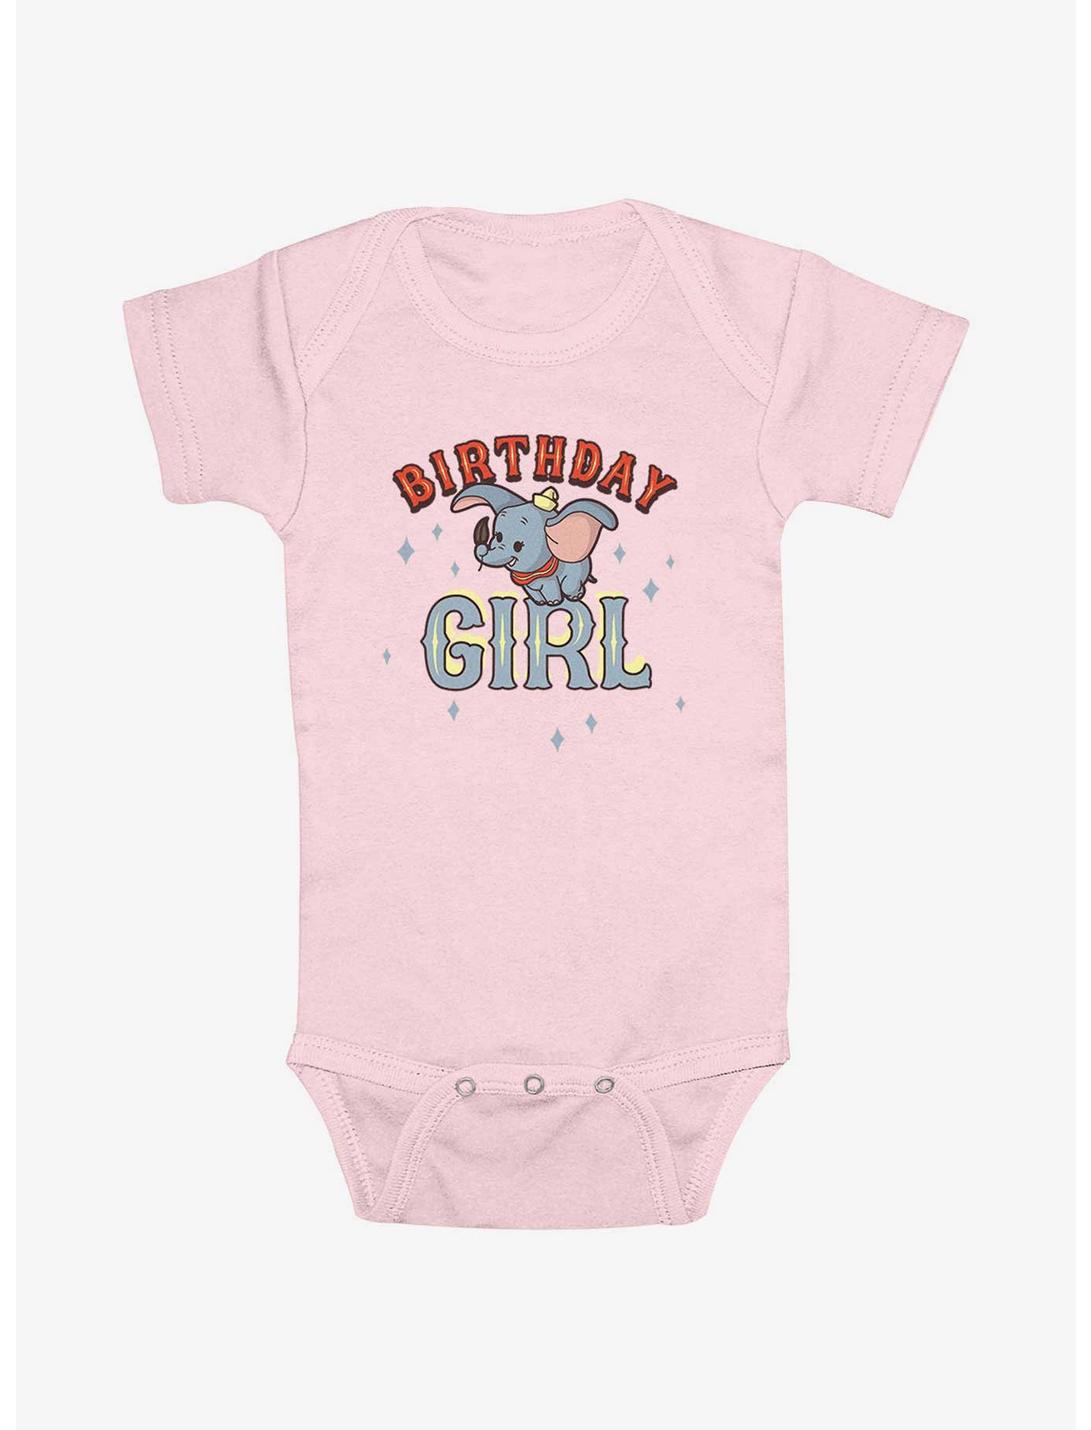 Disney Dumbo Birthday Girl Infant Bodysuit, LIGHT PINK, hi-res